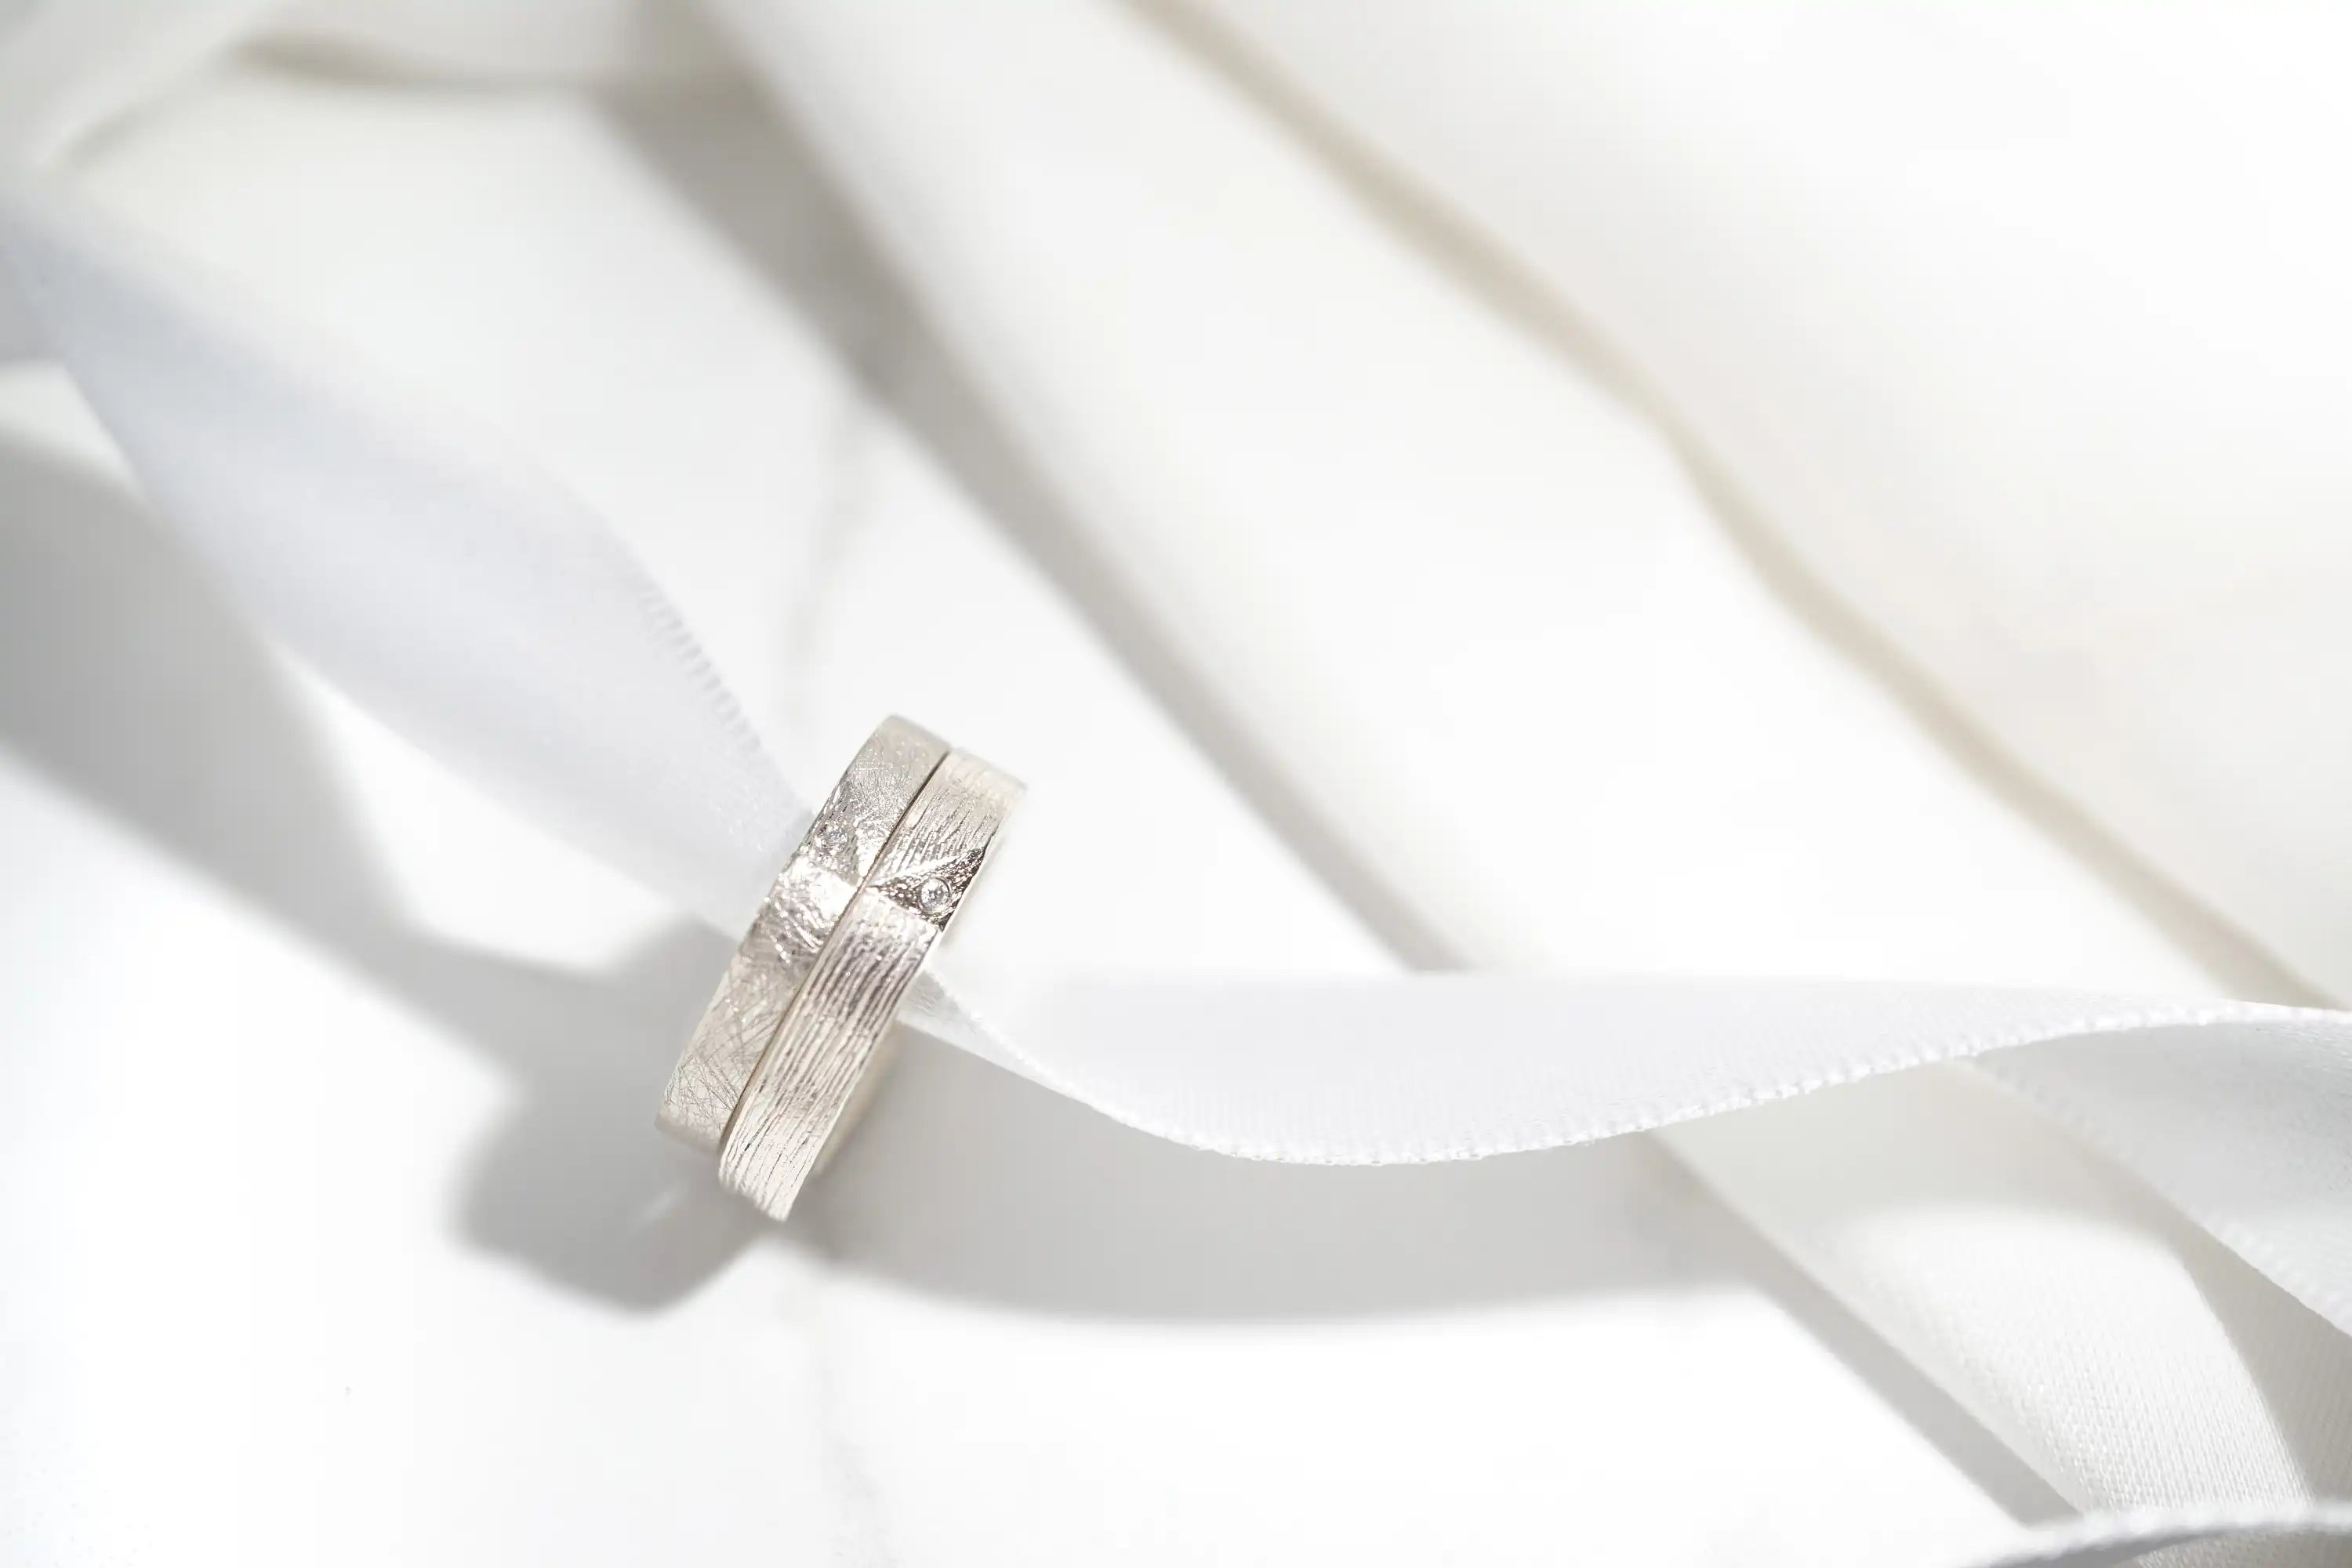 Chia Jewelry婚戒與週年對戒客製化，以字母k為設計，獨特質感紋路k金婚戒款式